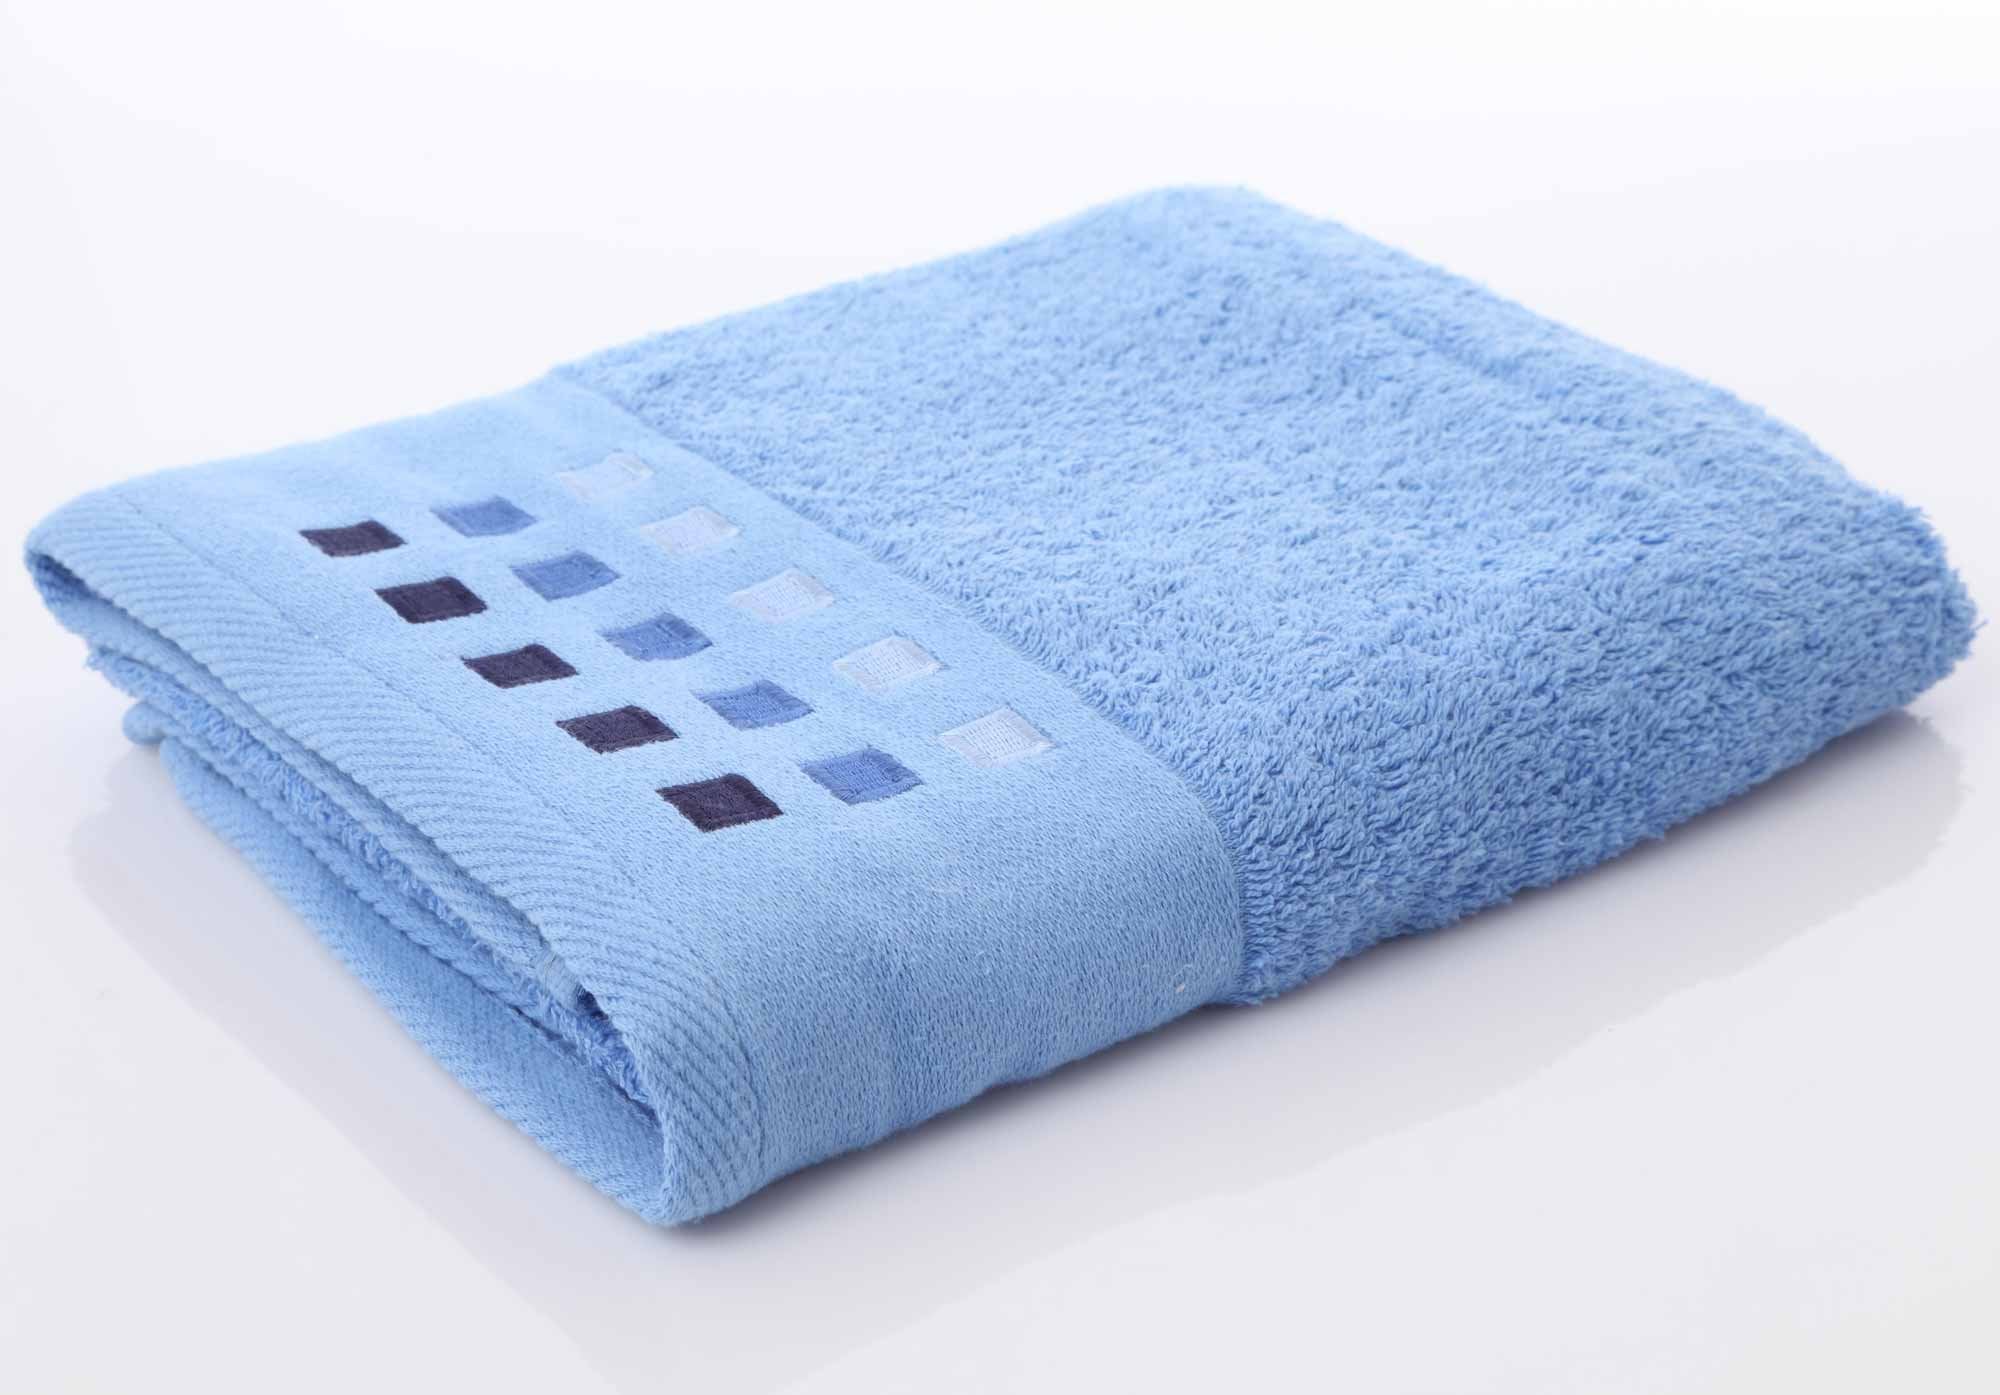 Mosaic 450g Towels, 3 Colours - 2 Sizes